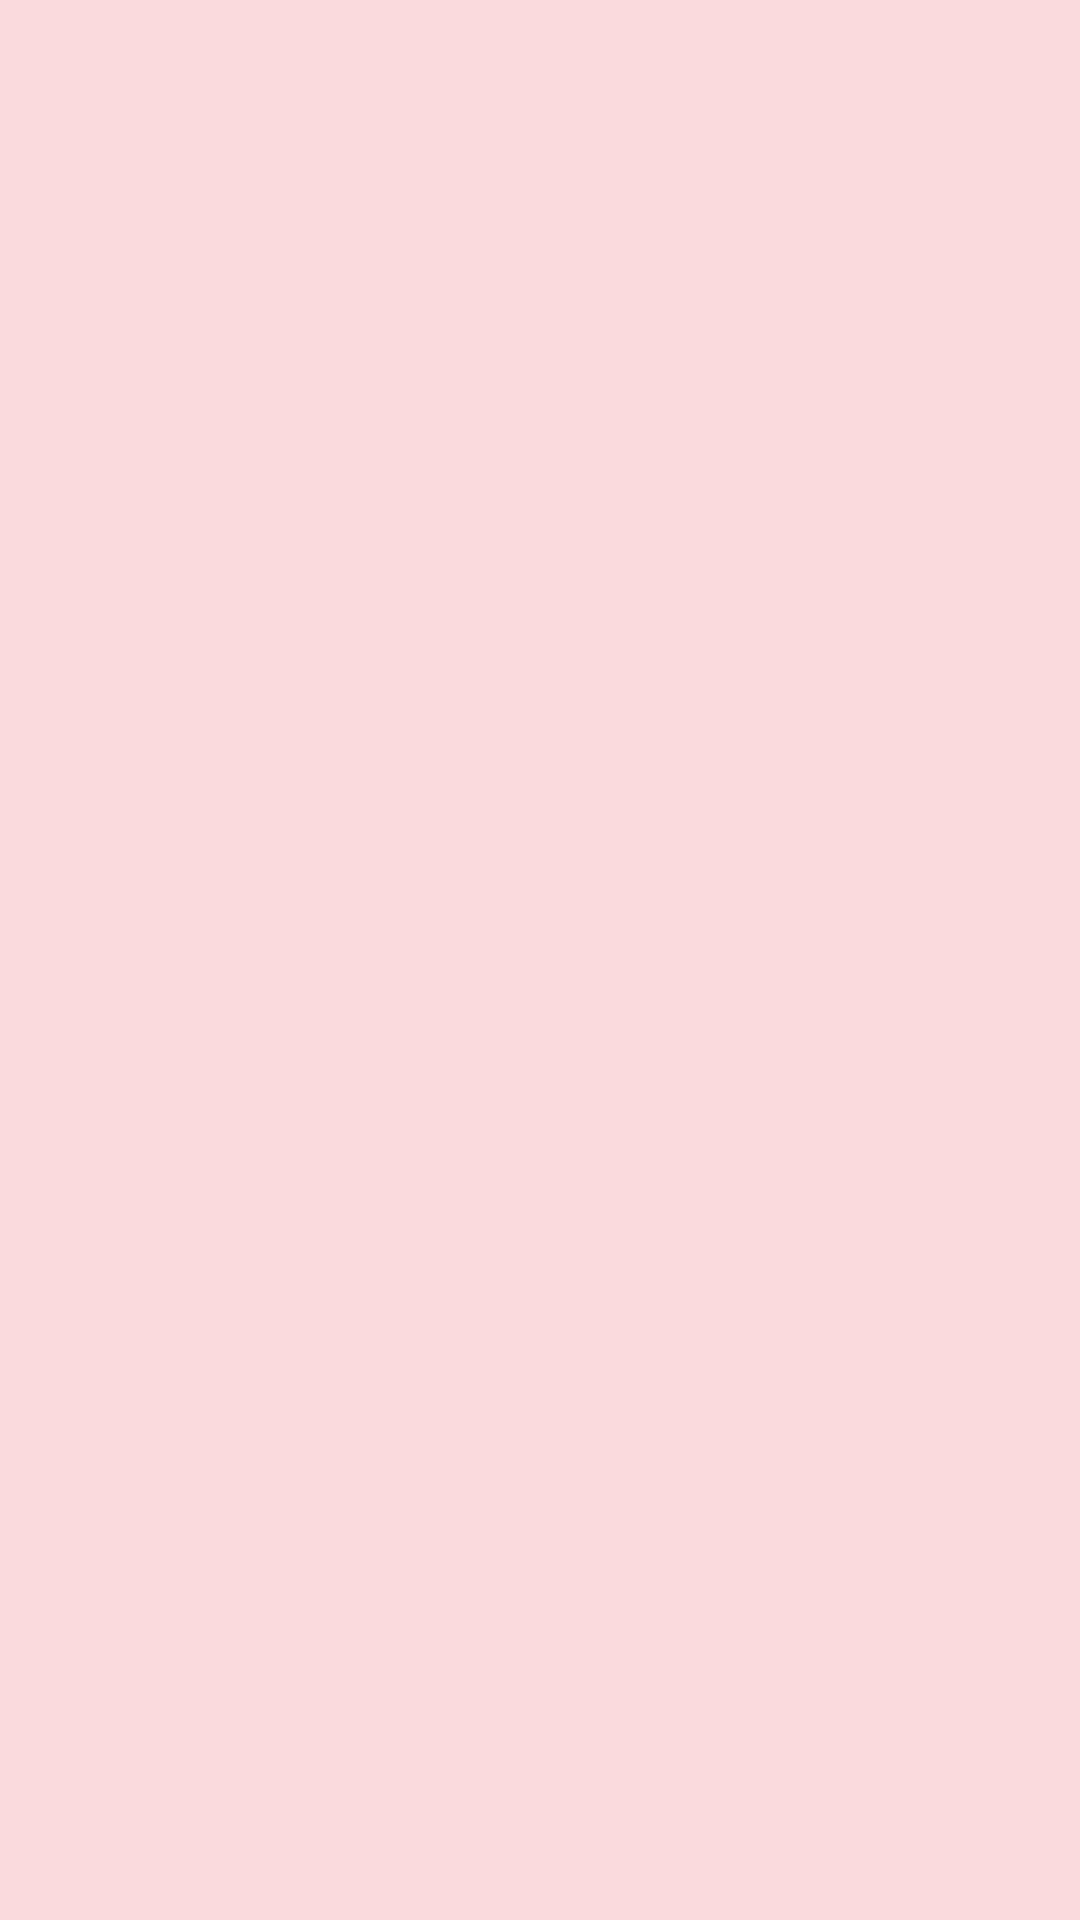 Đây là nền màu hồng nhạt đơn sắc tuyệt vời dành cho điện thoại của bạn! Với gam màu nhẹ nhàng và trang nhã, nền màu hồng này sẽ mang đến sự tĩnh lặng và giản đơn cho màn hình điện thoại của bạn, đồng thời tạo nên vẻ ngoài ấn tượng và đẳng cấp.